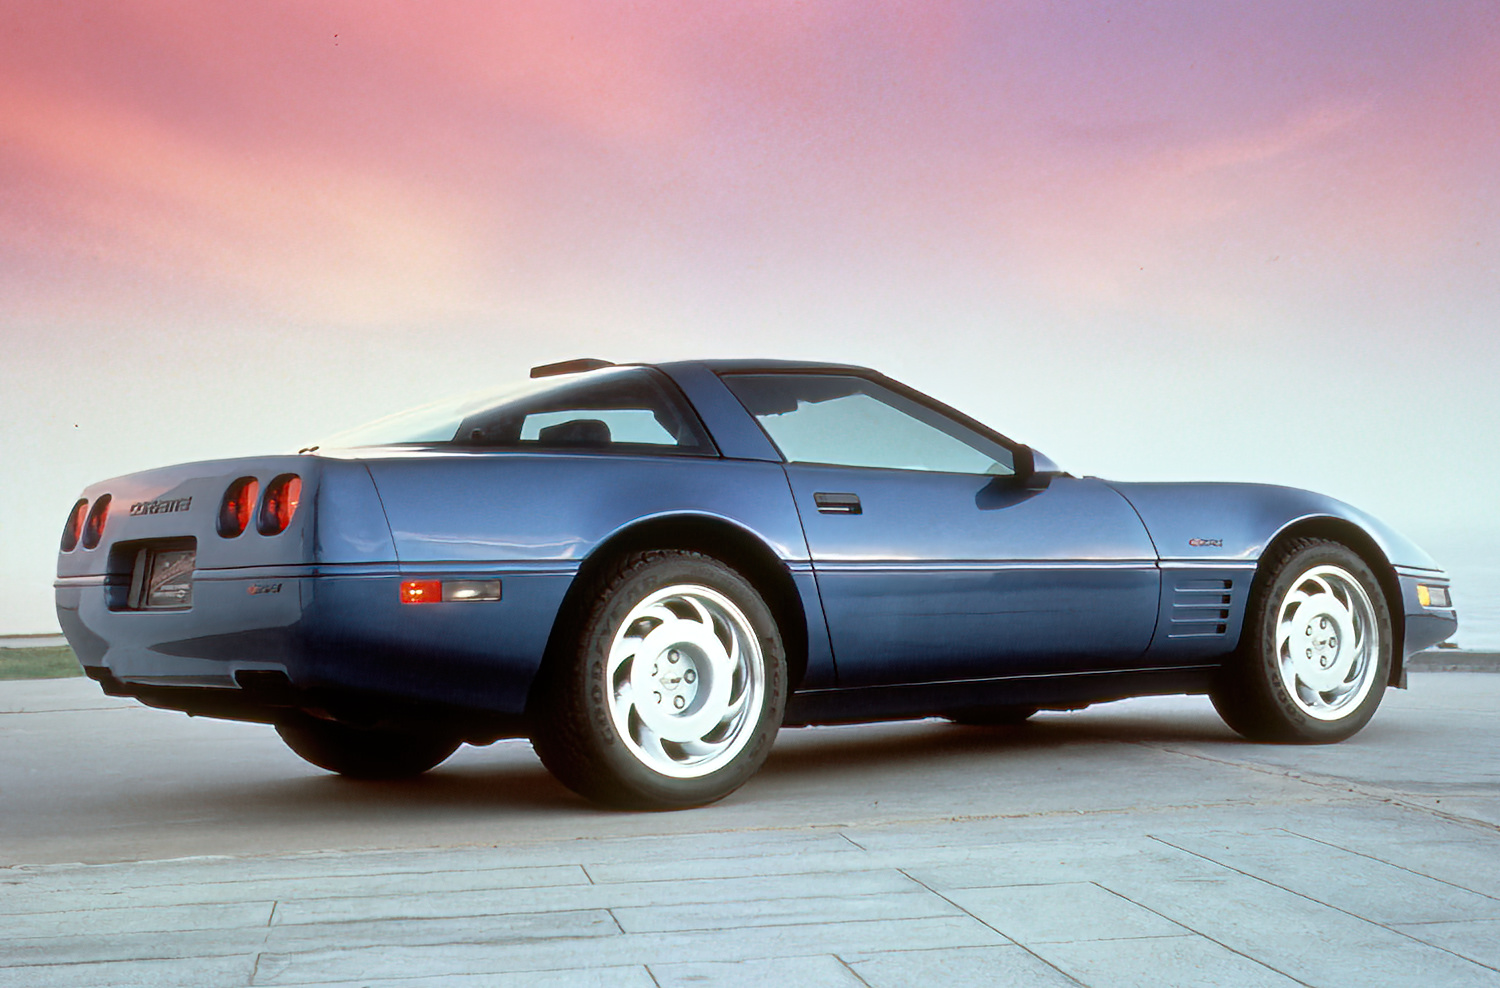 1992 Corvette Coupe in Quasar Blue Metallic